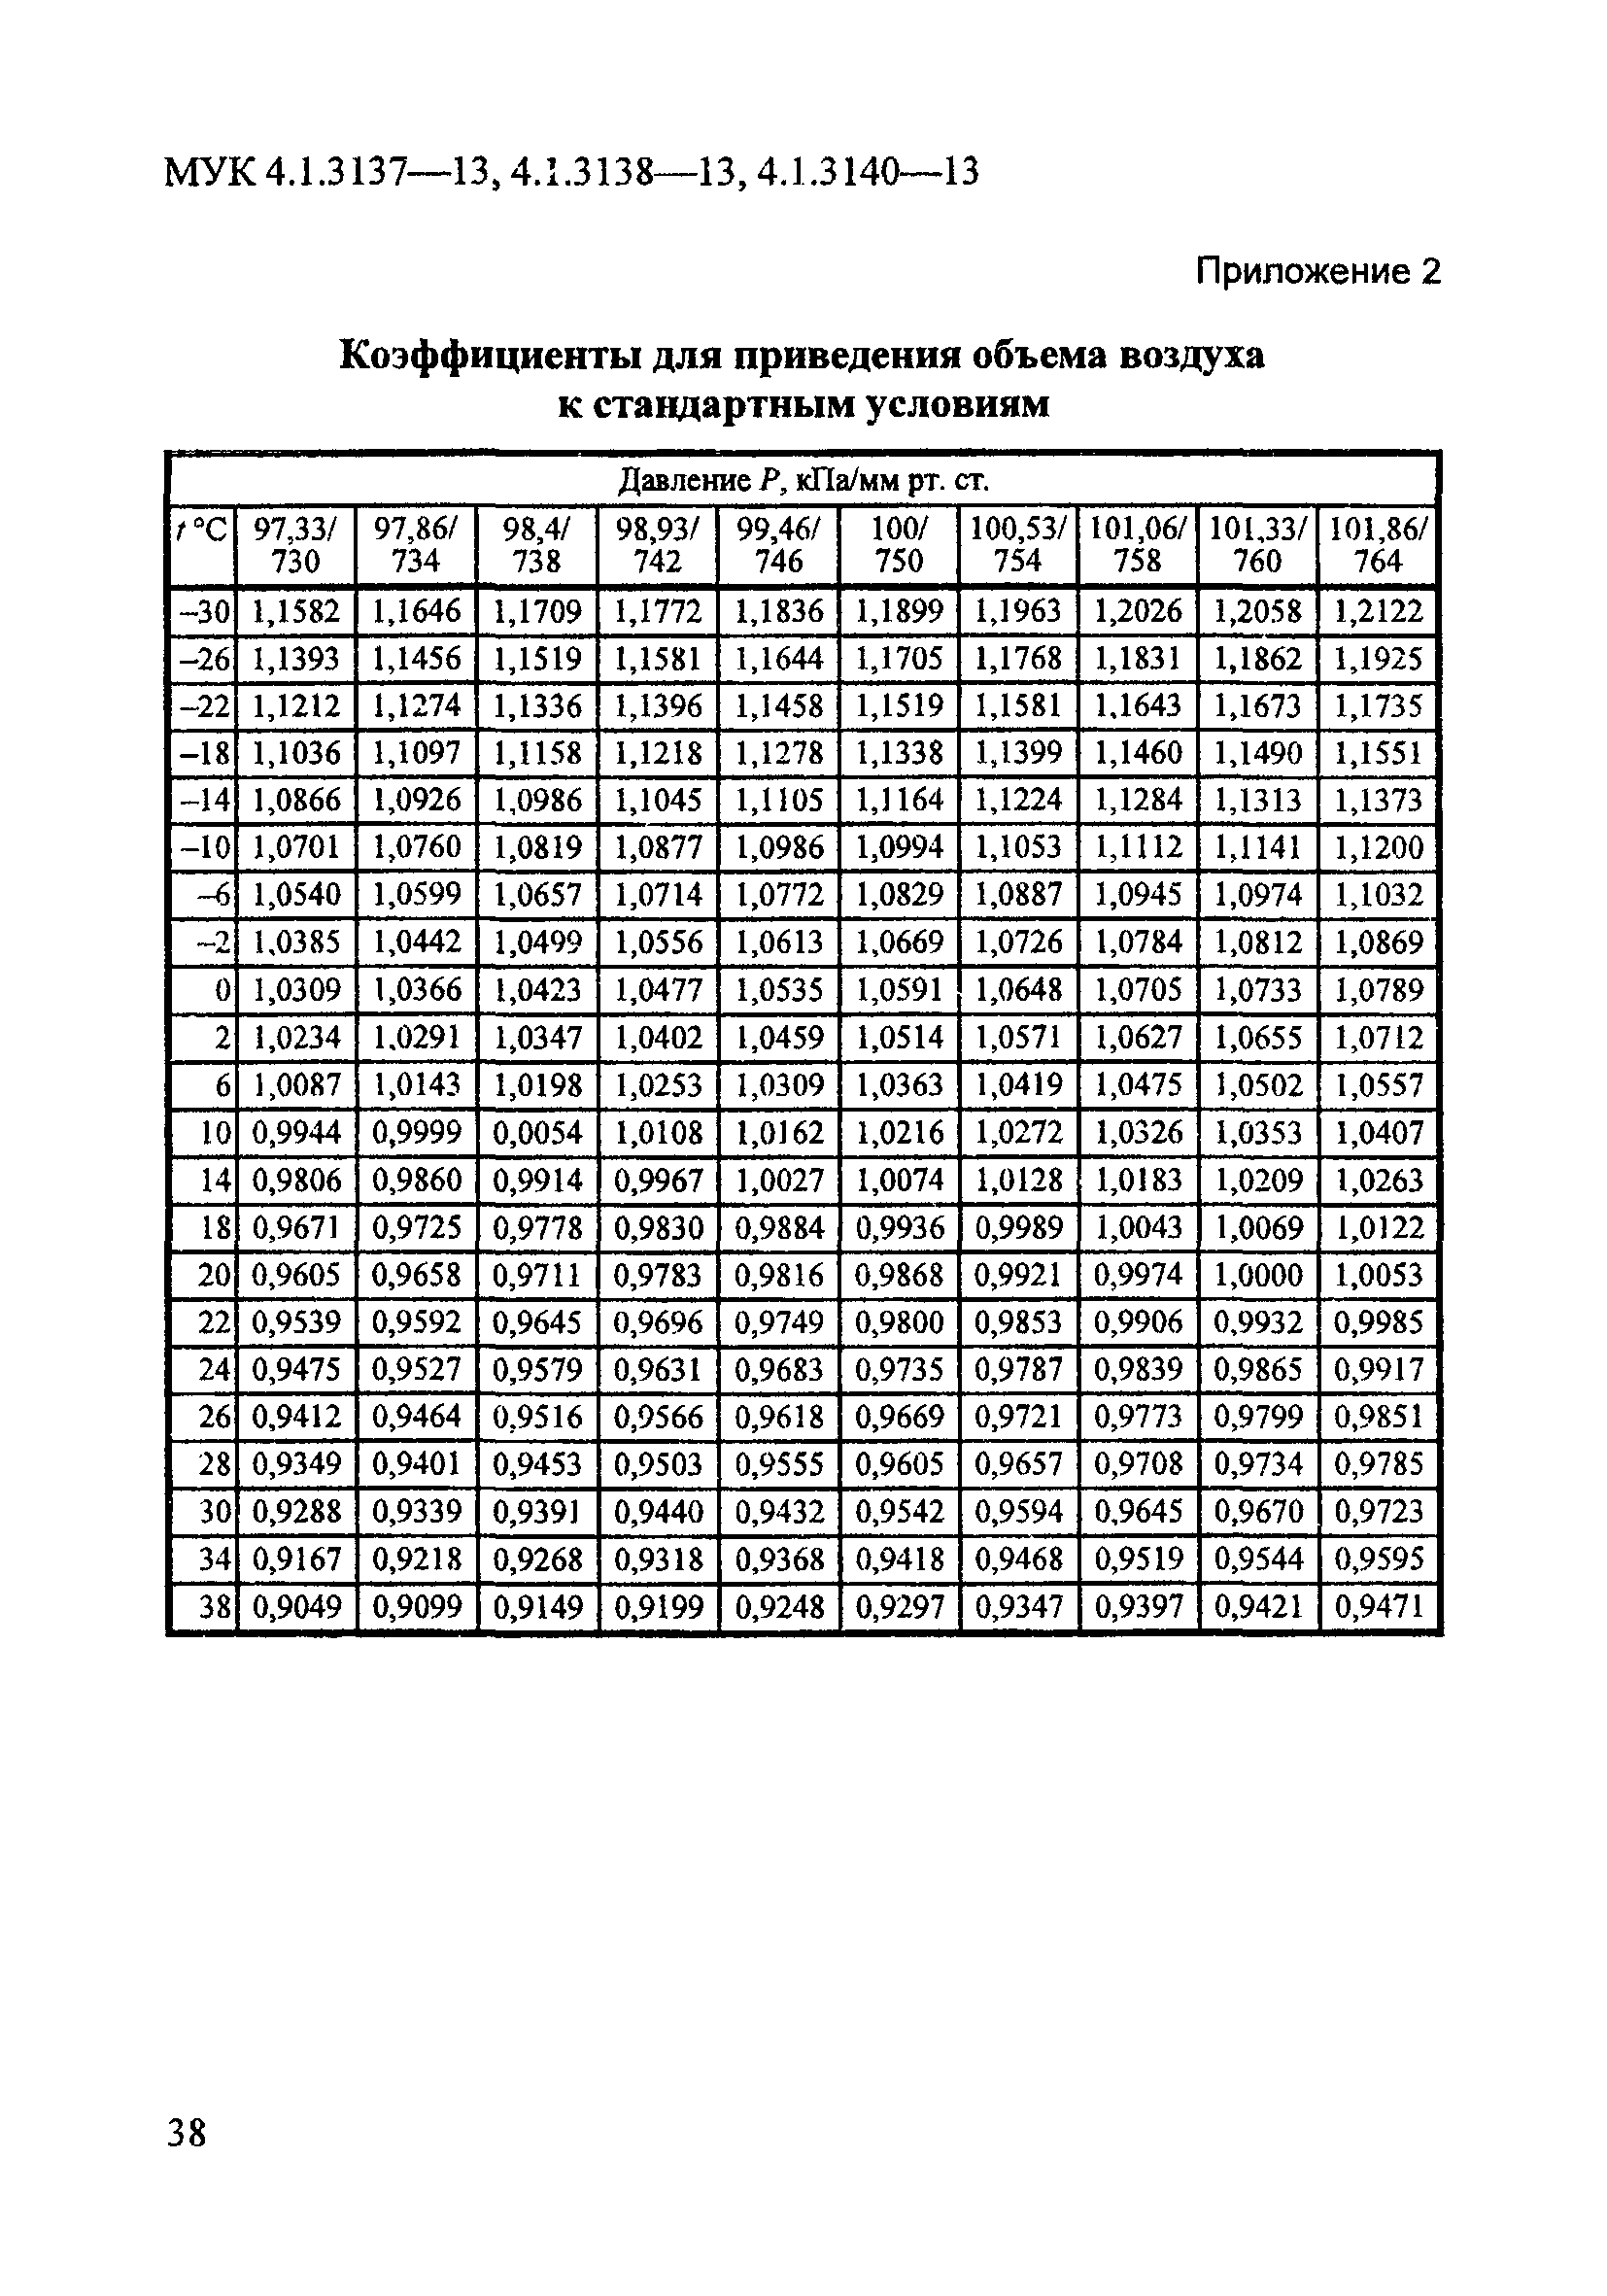 МУК 4.1.3138-13